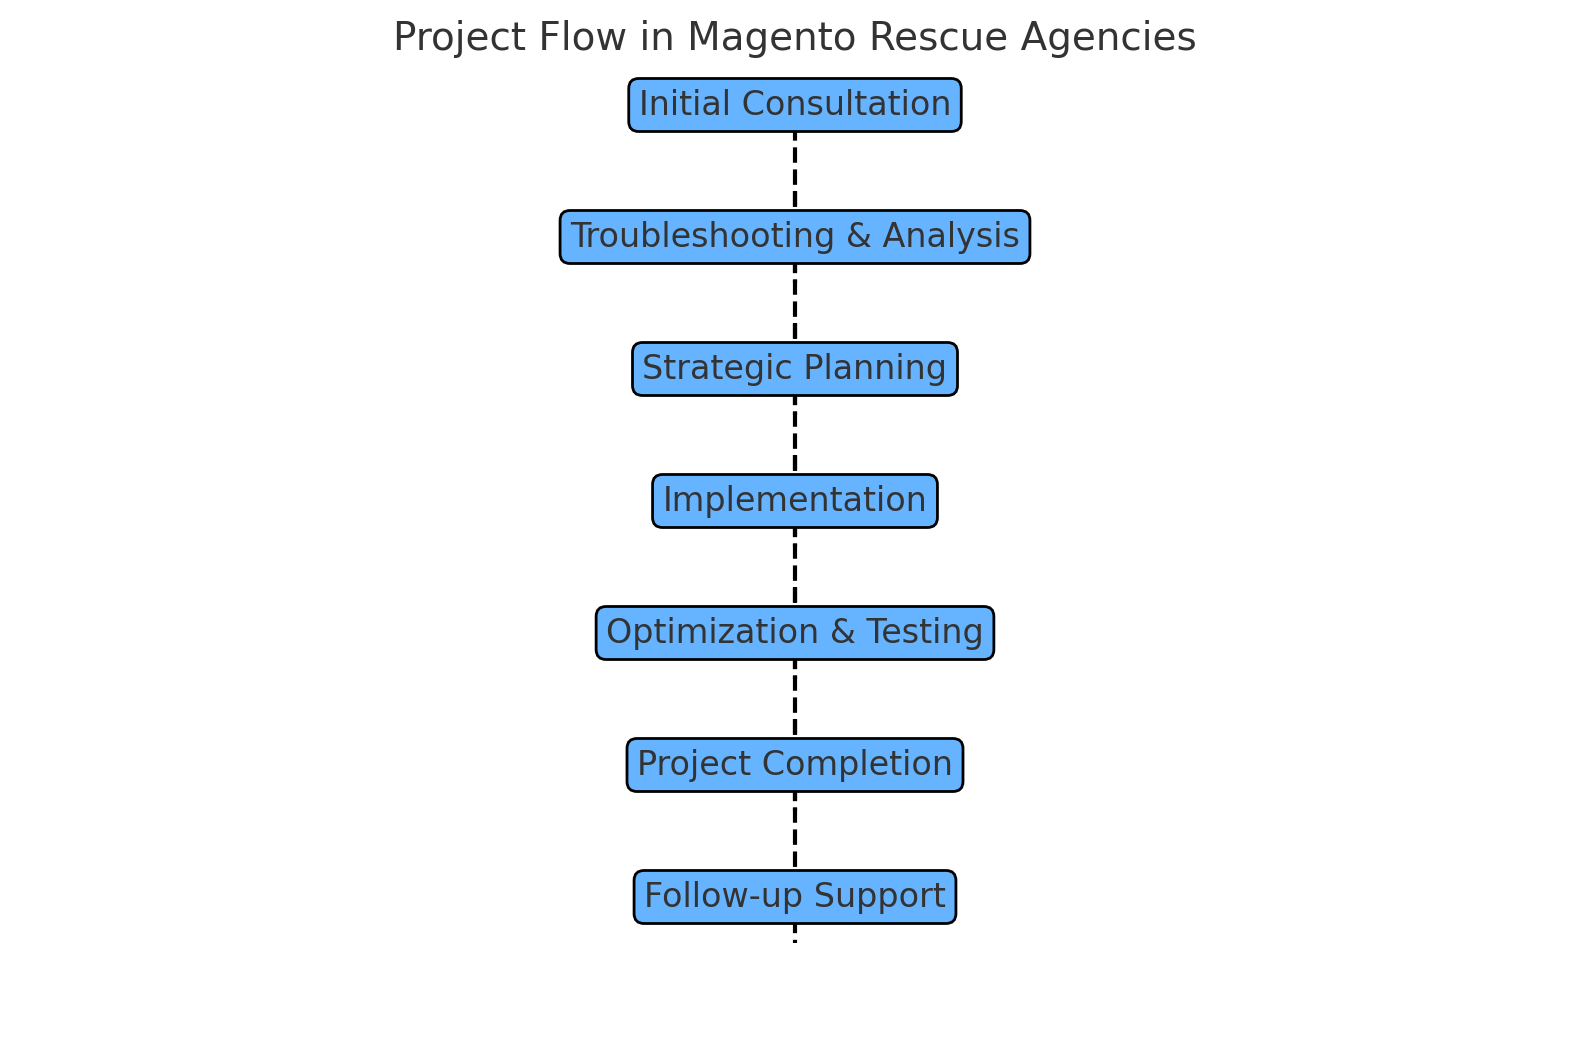 Process Flow in Magento Rescue Agencies